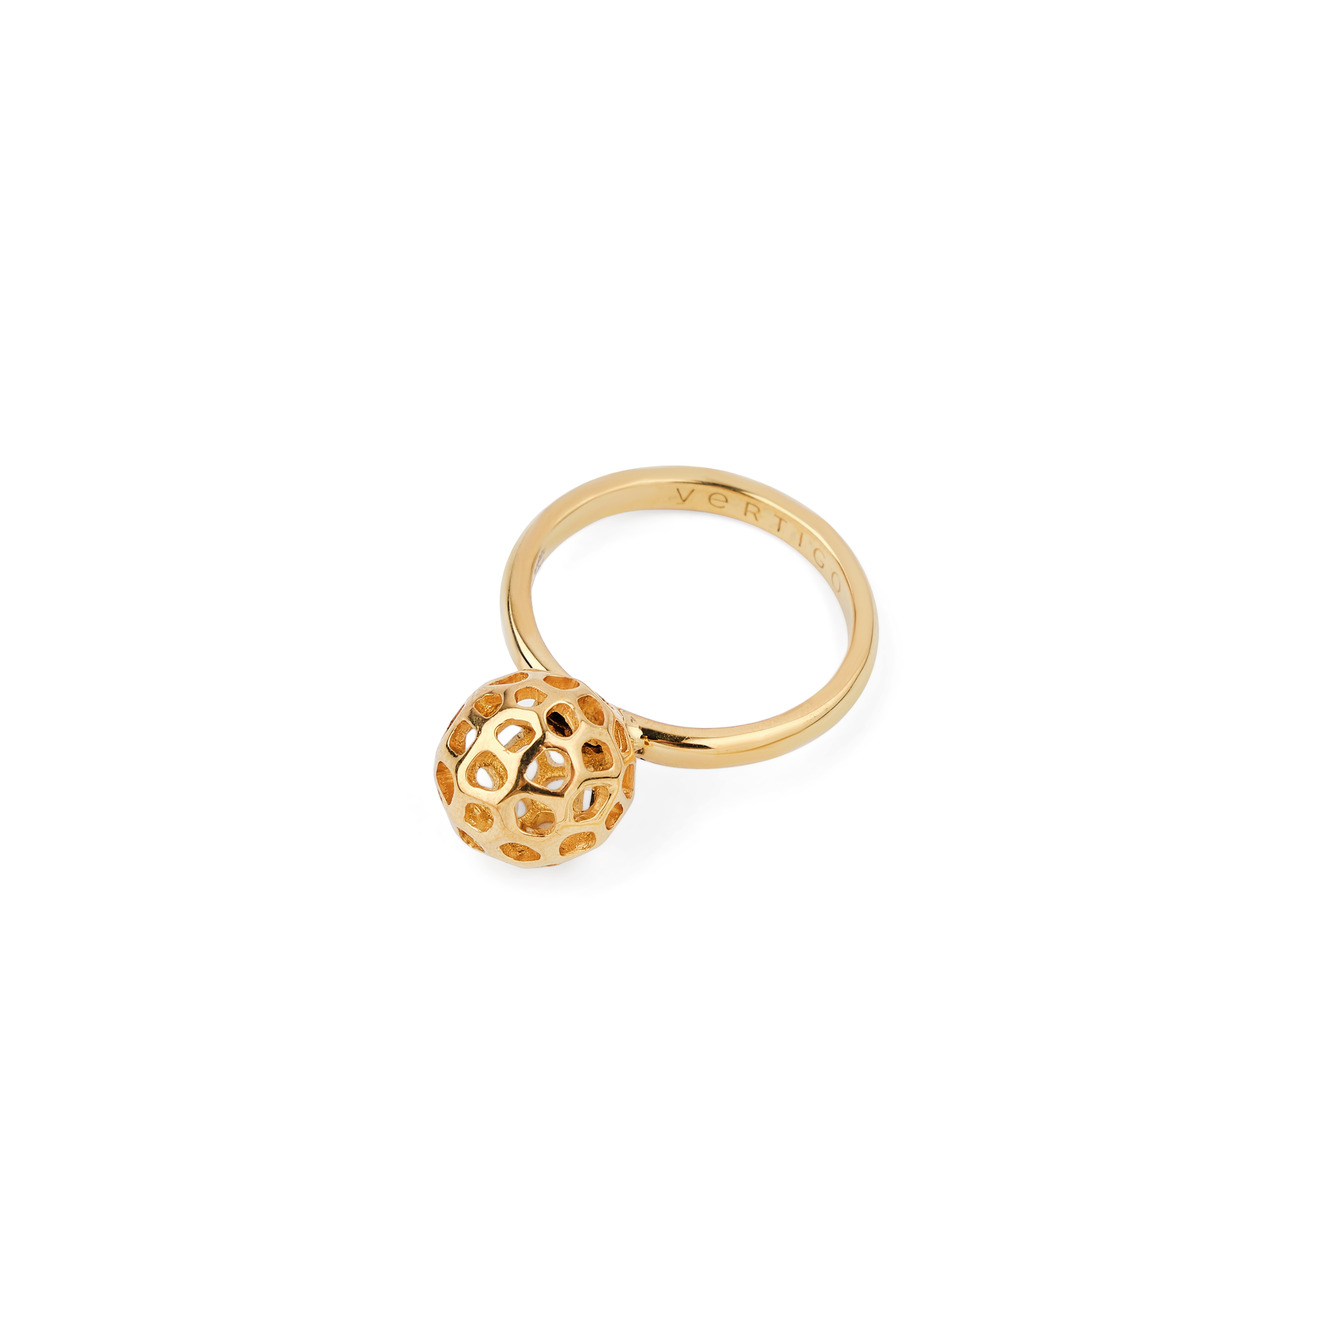 Vertigo Jewellery Lab Позолоченное кольцо CELL VORONOI RADIOLARIA из серебра vertigo jewellery lab фаланговое кольцо из серебра essentials покрытое розовым золотом